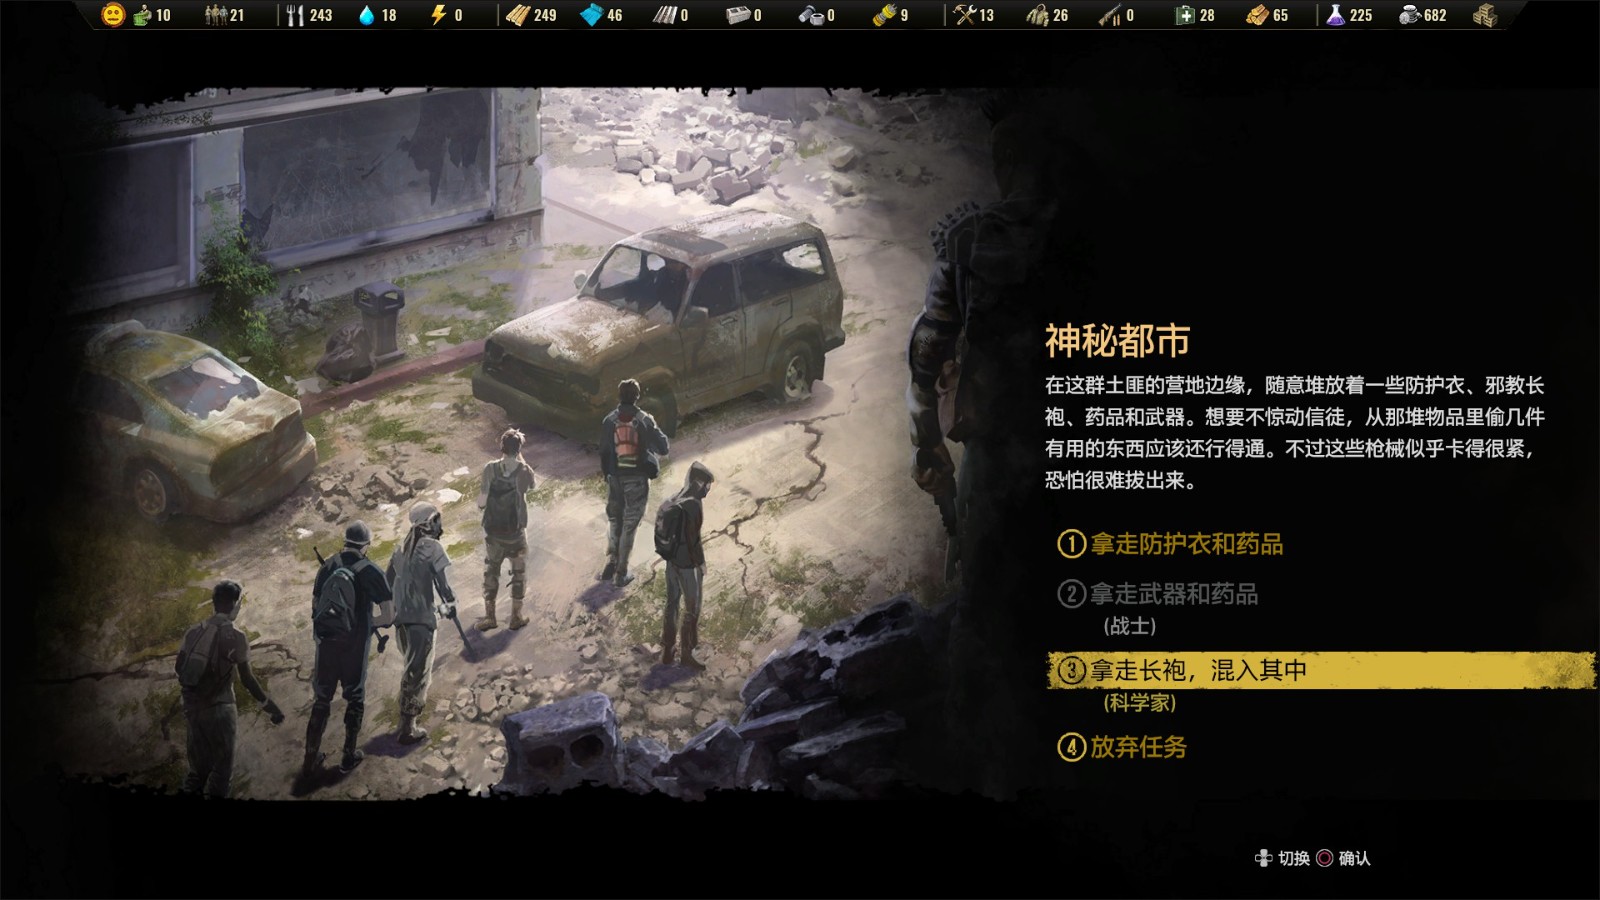 终极生存模拟游戏《末日求生》公开聚居地内会发生的各种任务与事件